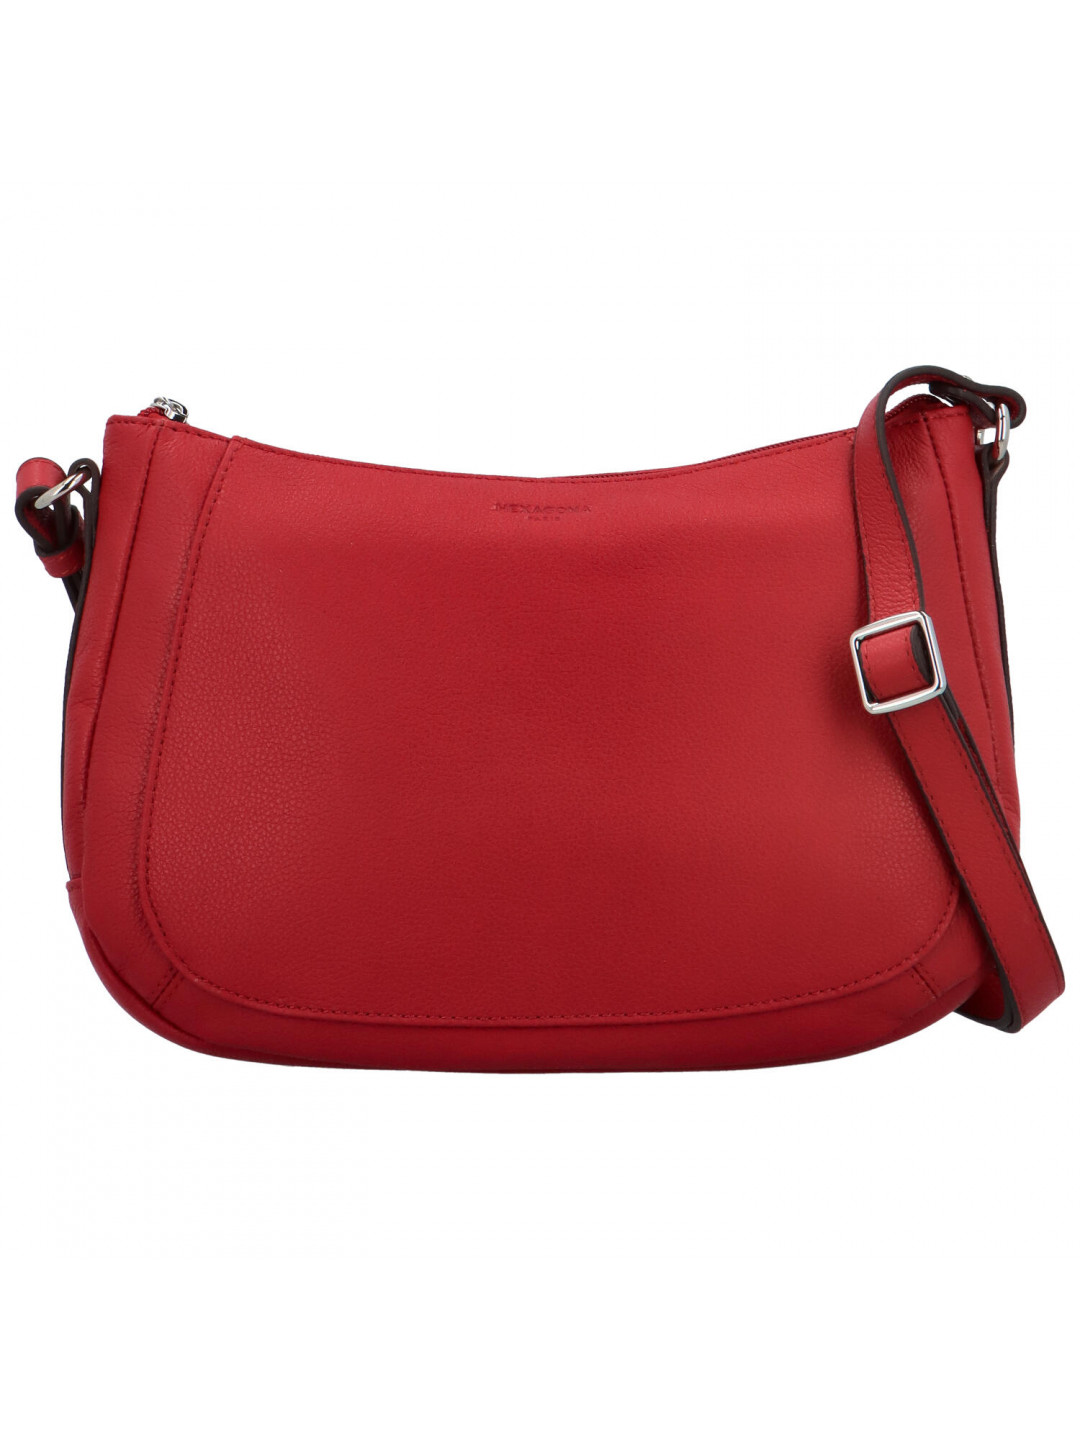 Dámská kožená kabelka přes rameno tmavě červená – Hexagona Chanel